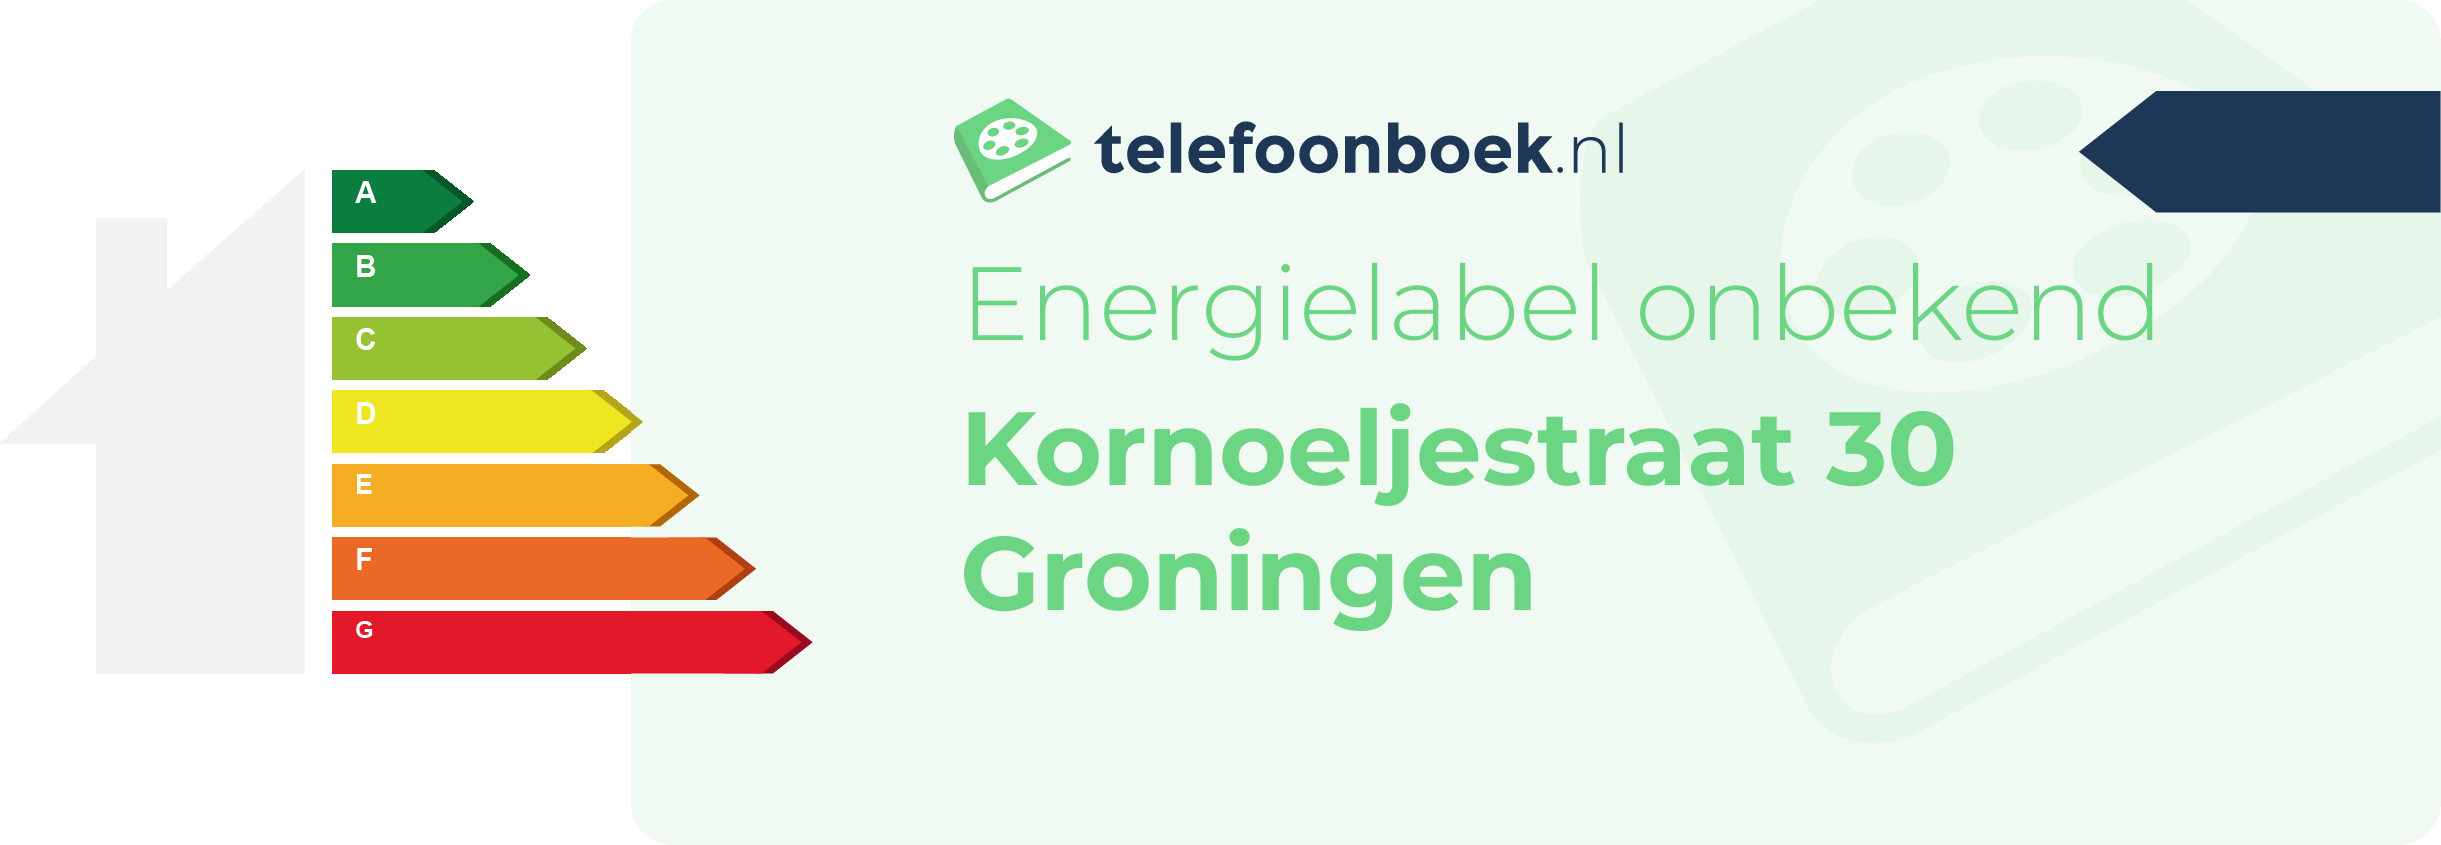 Energielabel Kornoeljestraat 30 Groningen